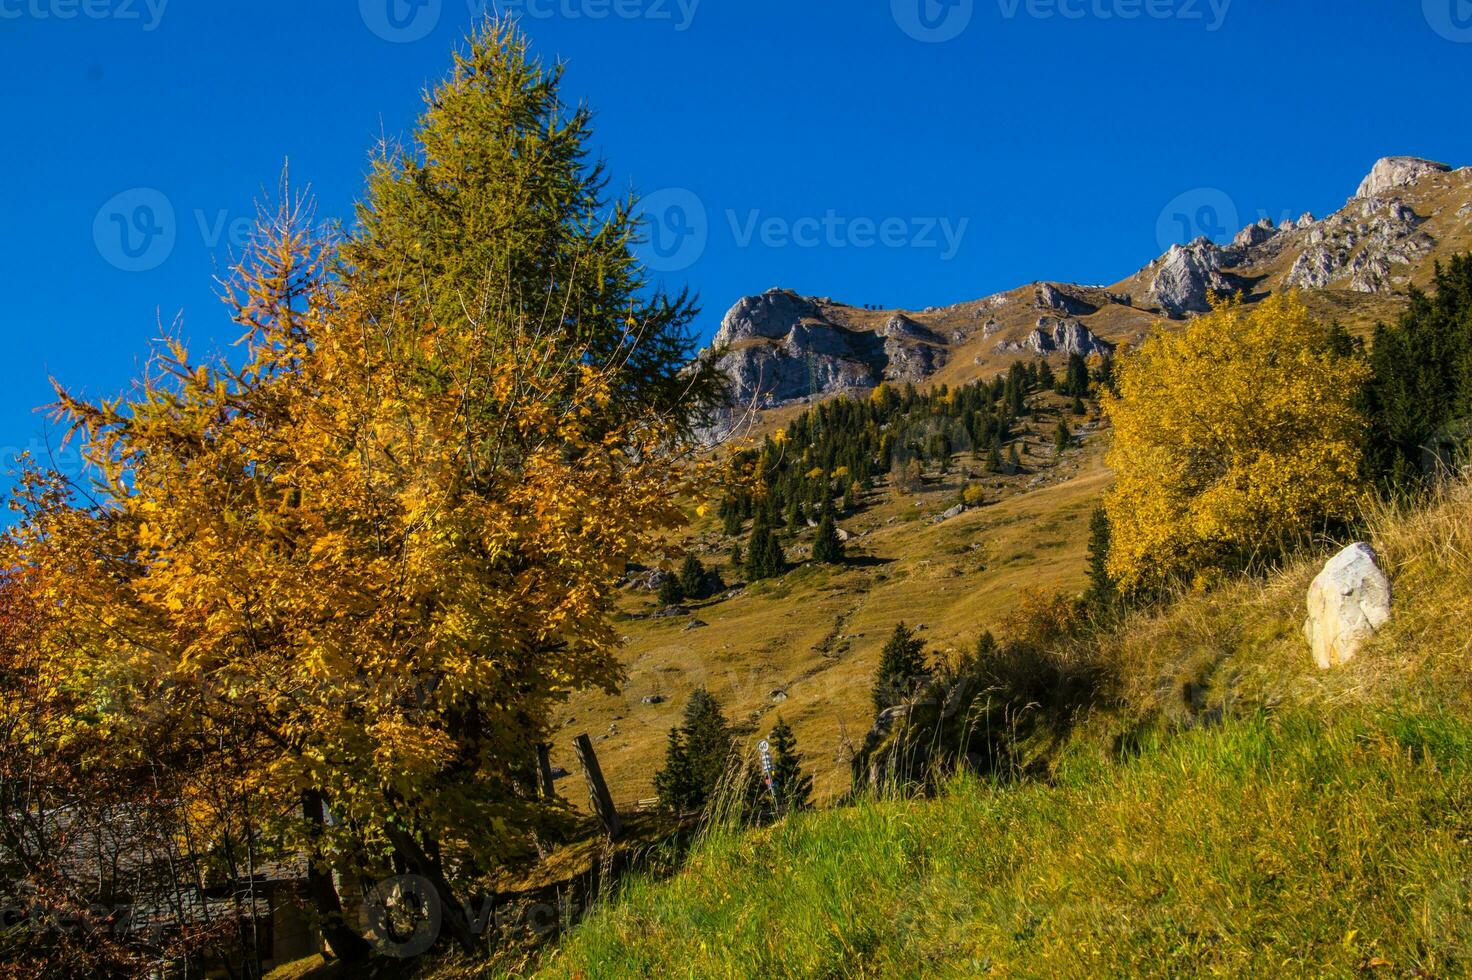 paysage des Alpes suisse en automne photo